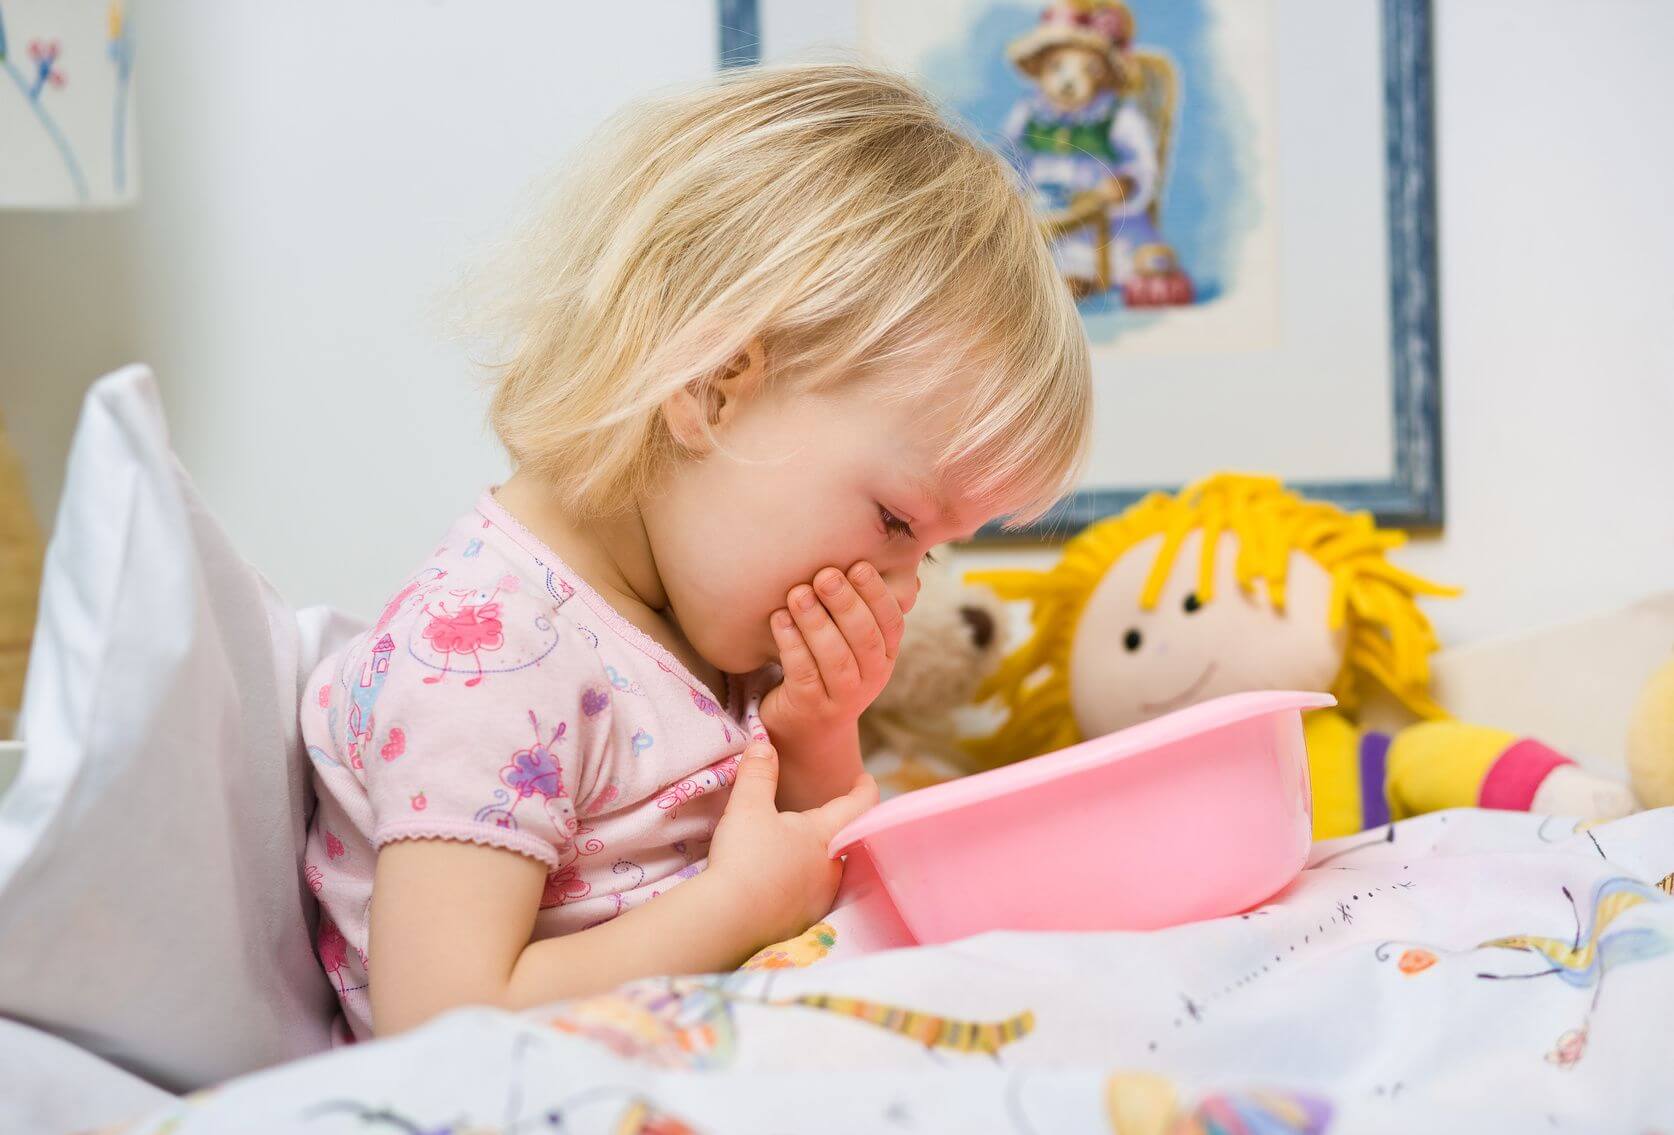 Los vómitos frecuentes en niños tienen varias causas